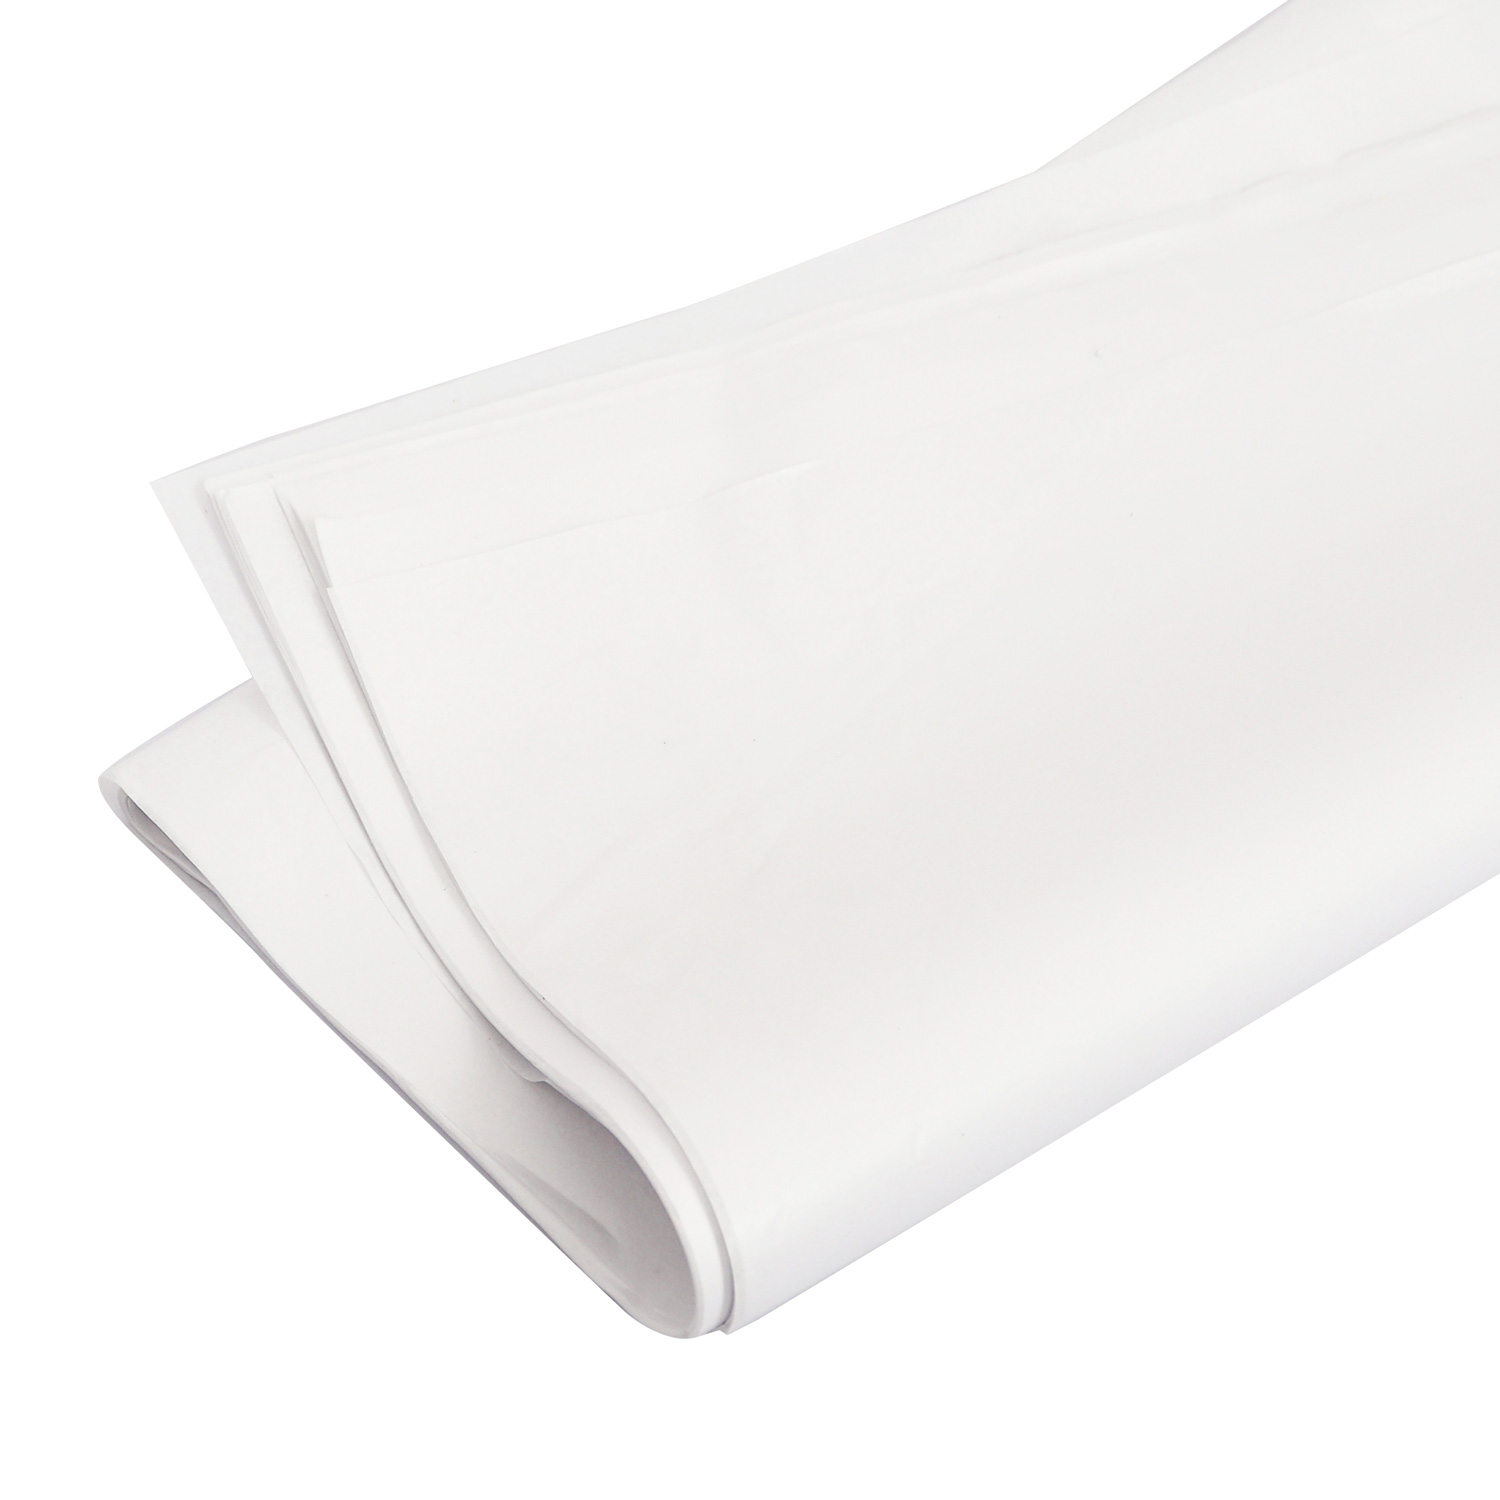  Liphontcta Papel de seda blanco prémium de 20 x 20 pulgadas,  paquete de 100 hojas : Industrial y Científico